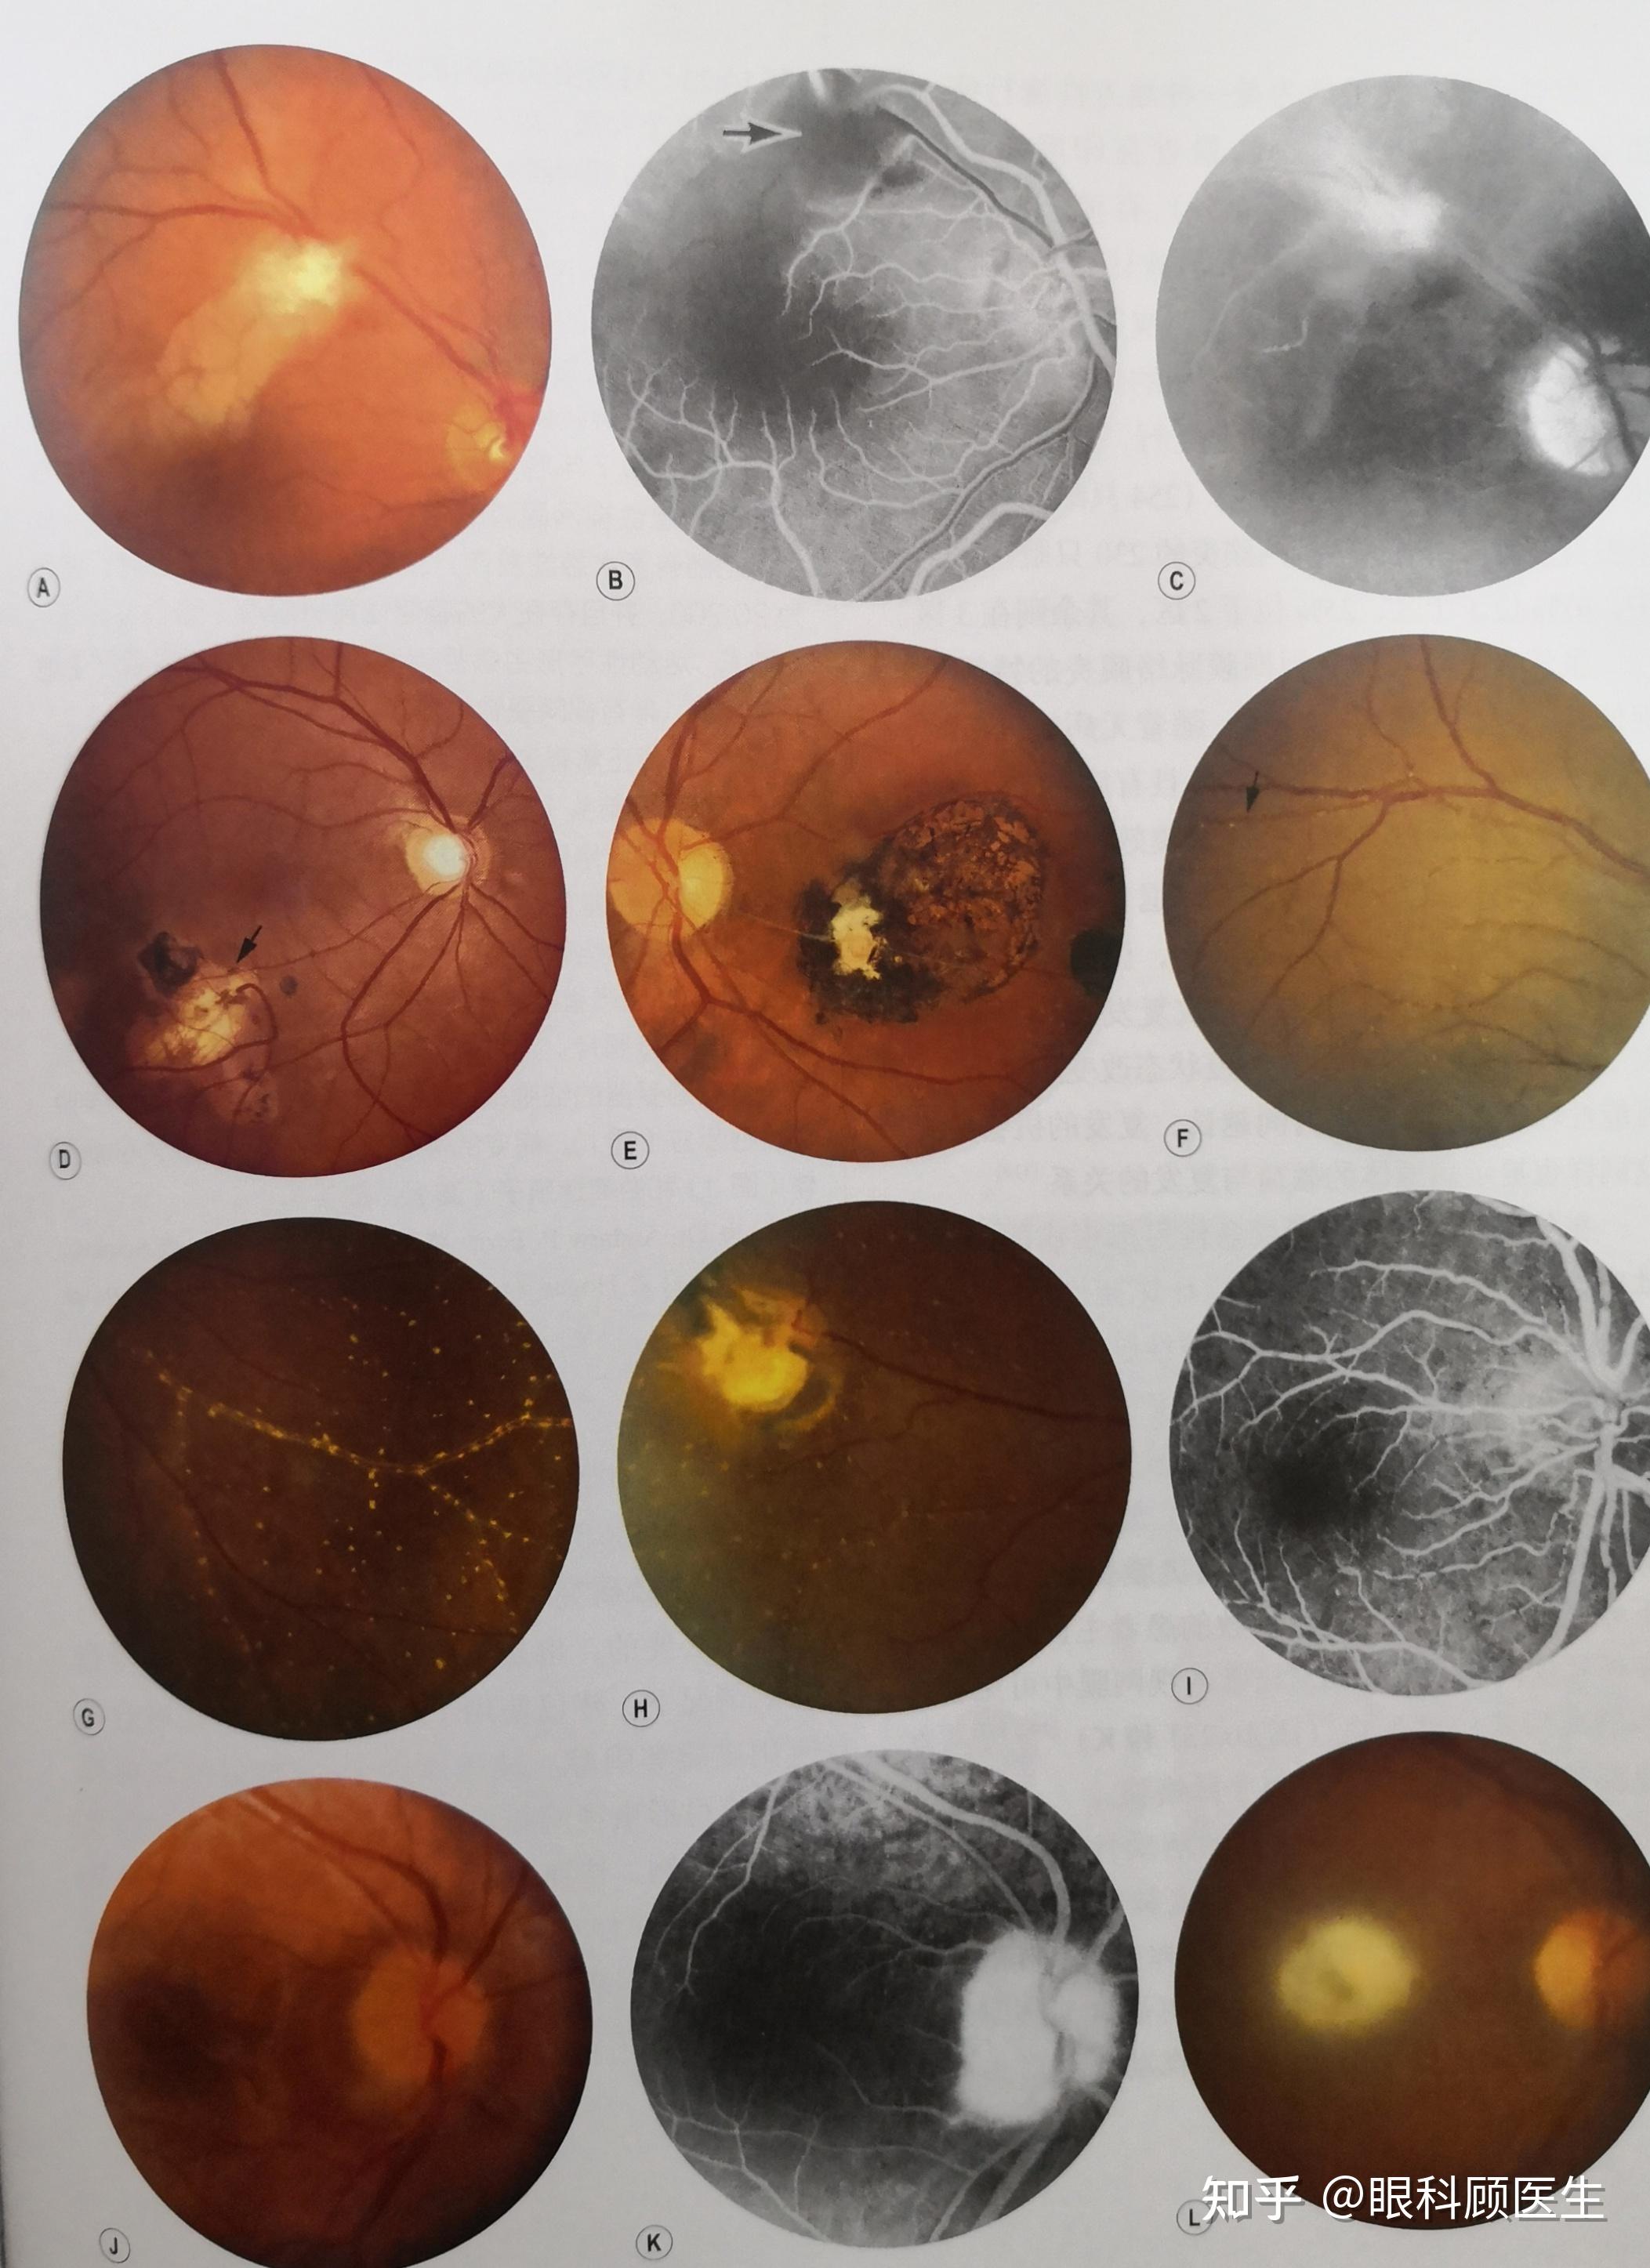 弓形虫病引起的视网膜脉络膜炎是什么样的? 